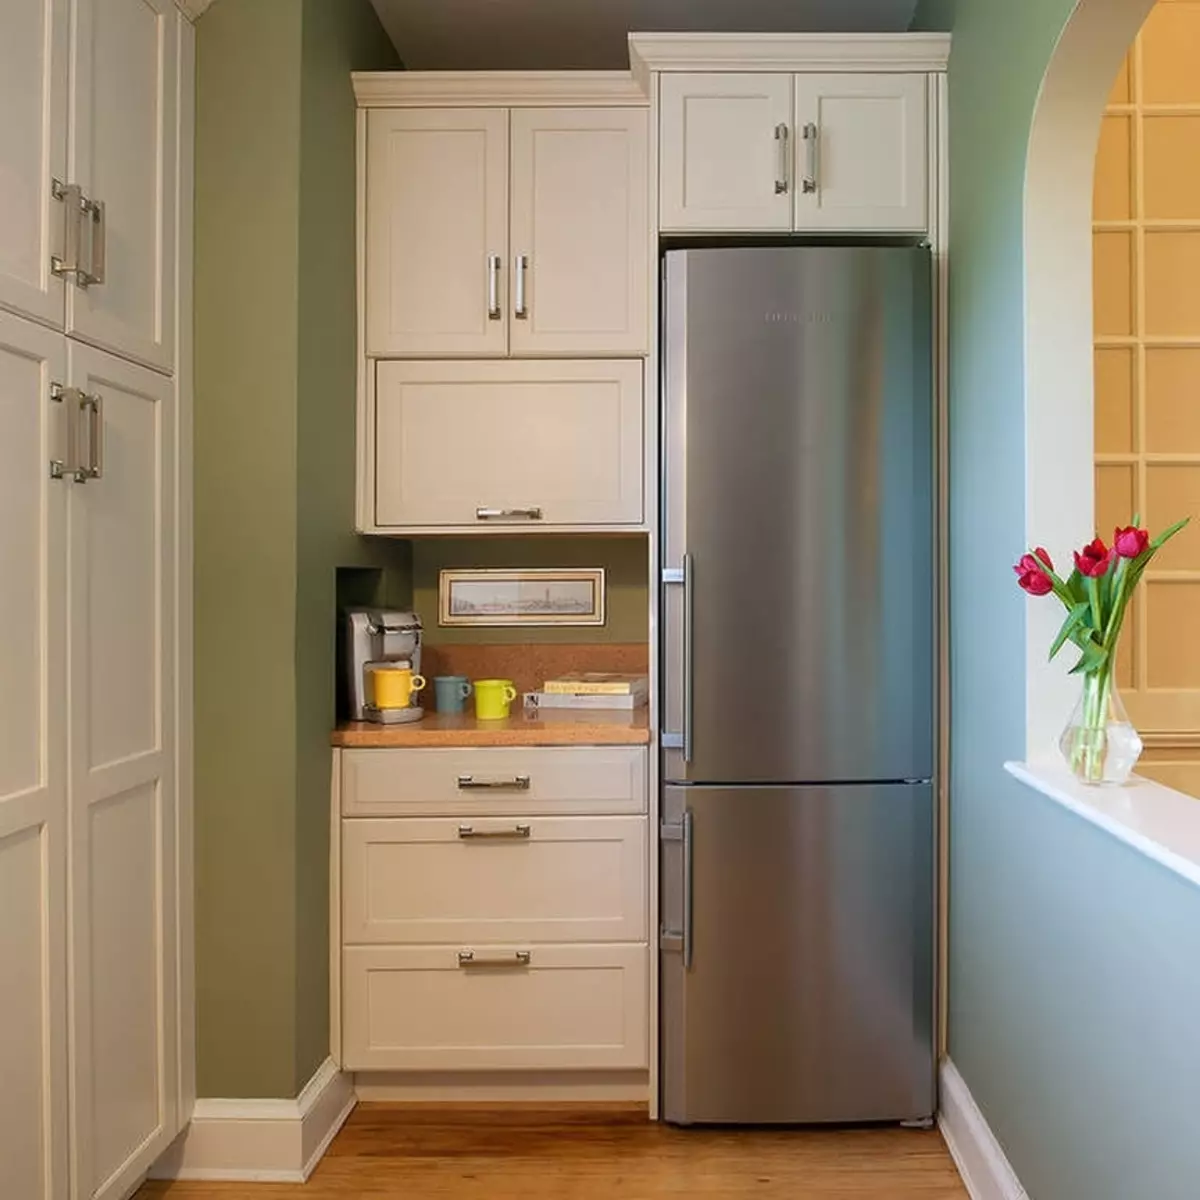 Dapur interior tempat untuk menempatkan ide foto desain kulkas